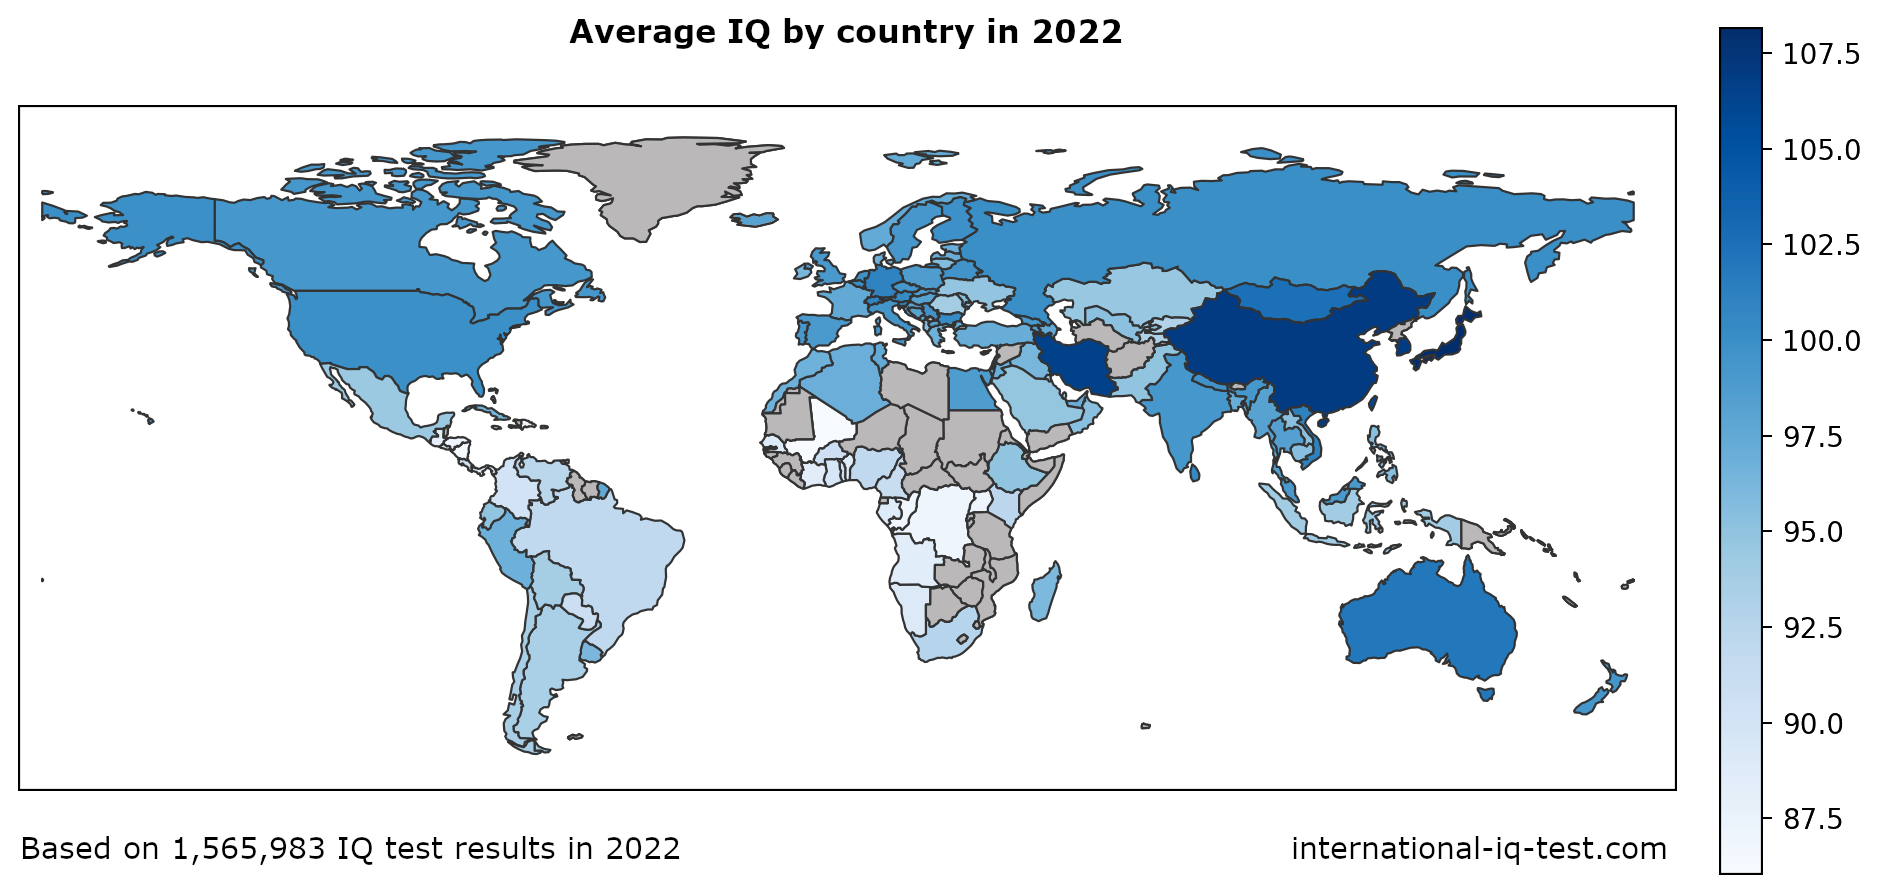 Pasaules karte, kurā parādīts vidējais IQ katrā valstī 2022. gadā, izmantojot zilas krāsas toņus no visgaišākā līdz vistumsākajam.